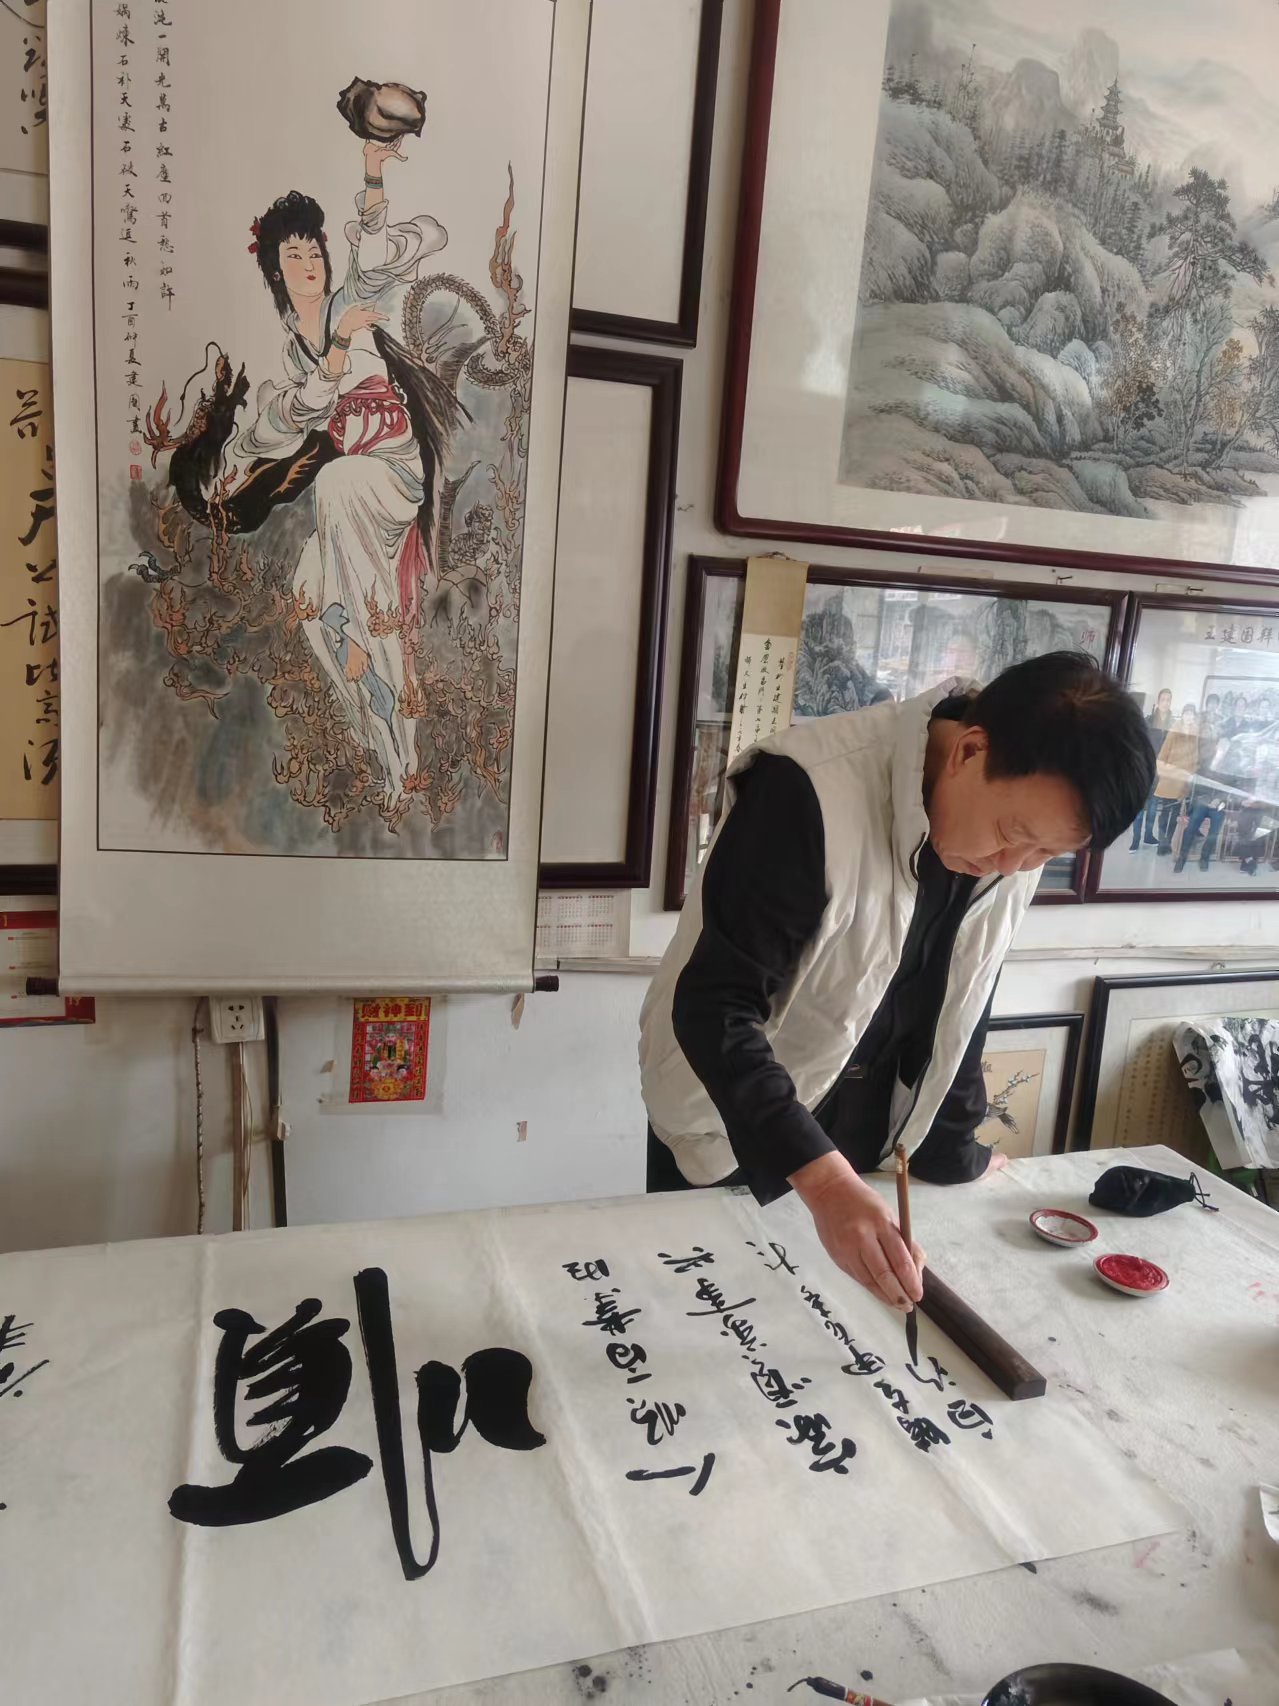 中国一级书画家冯增波先生与雄安名煌文化传